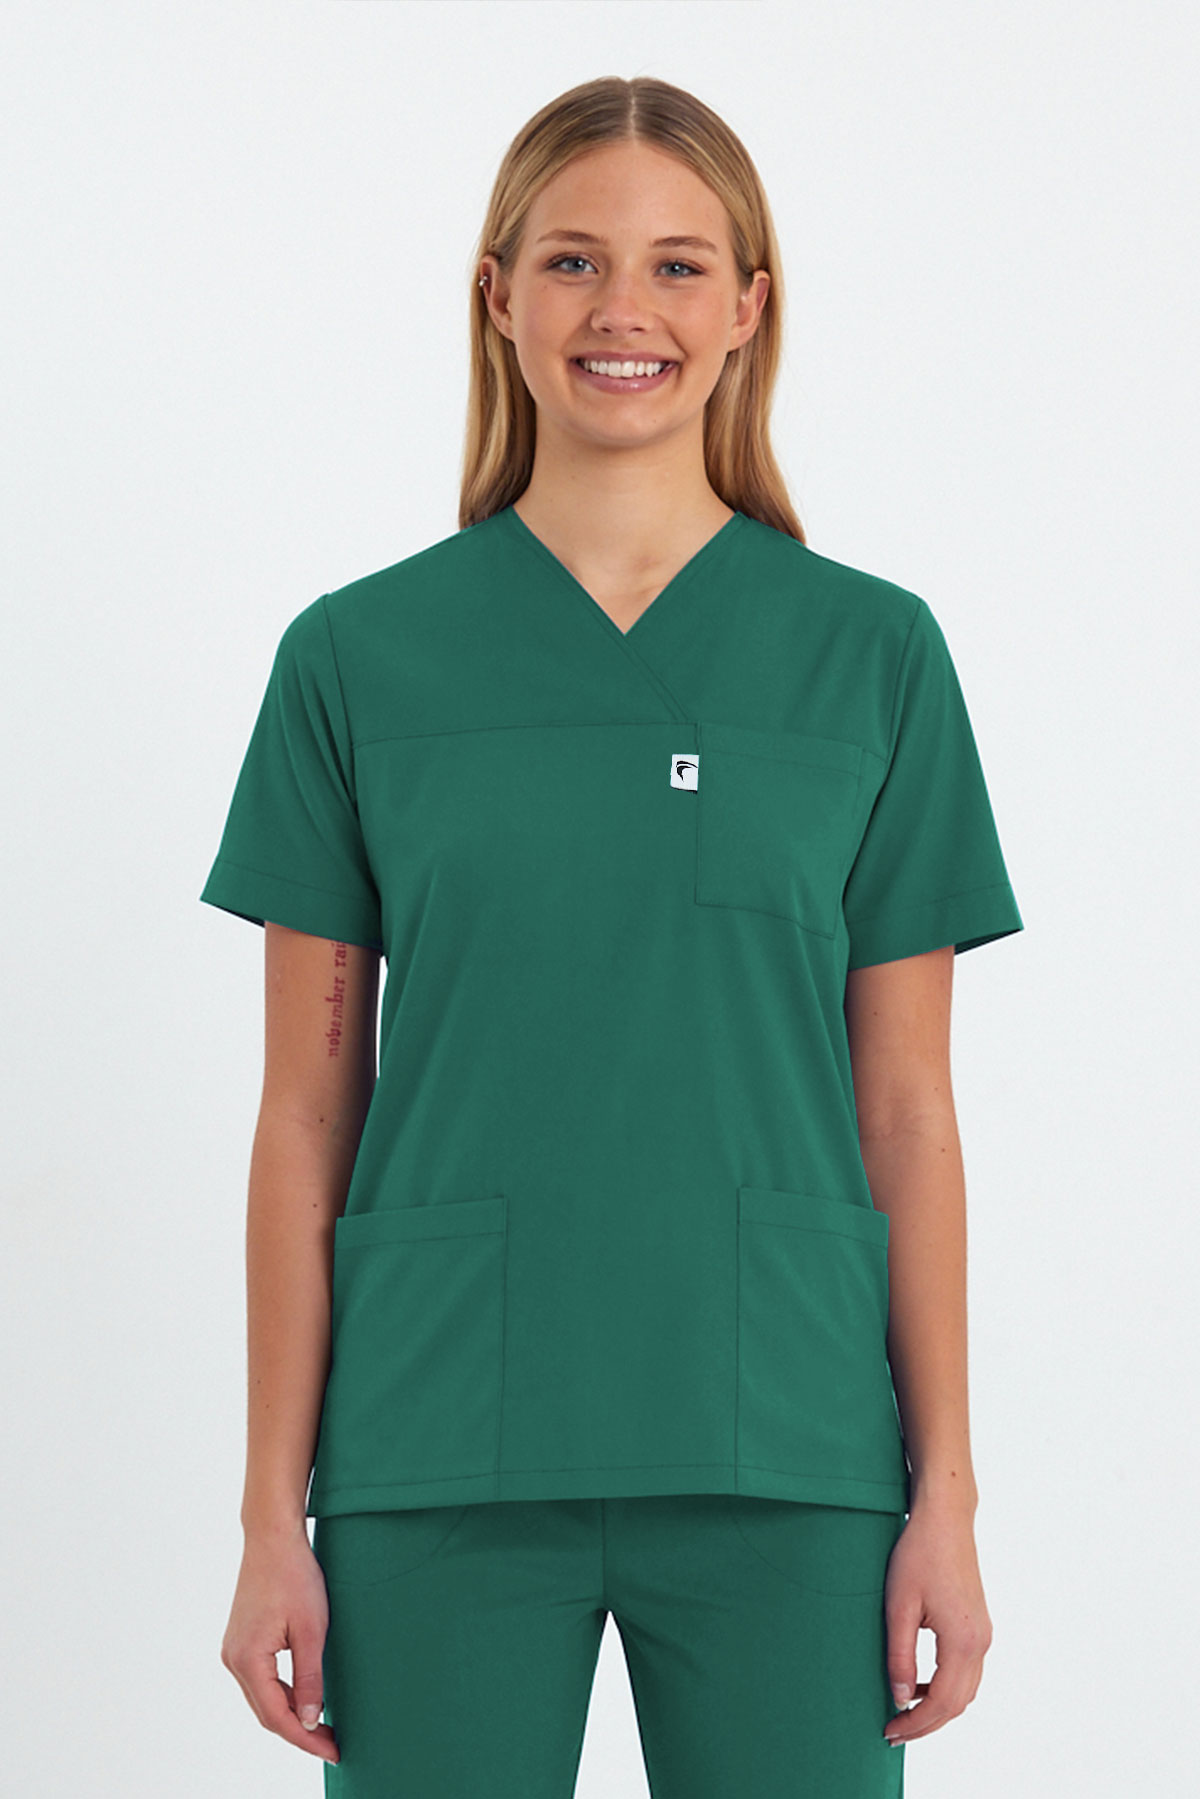 LAME 1003 Basic Likralı Cerrahi Yeşil Scrubs Zarf Yaka Hemşire Forması Üstü